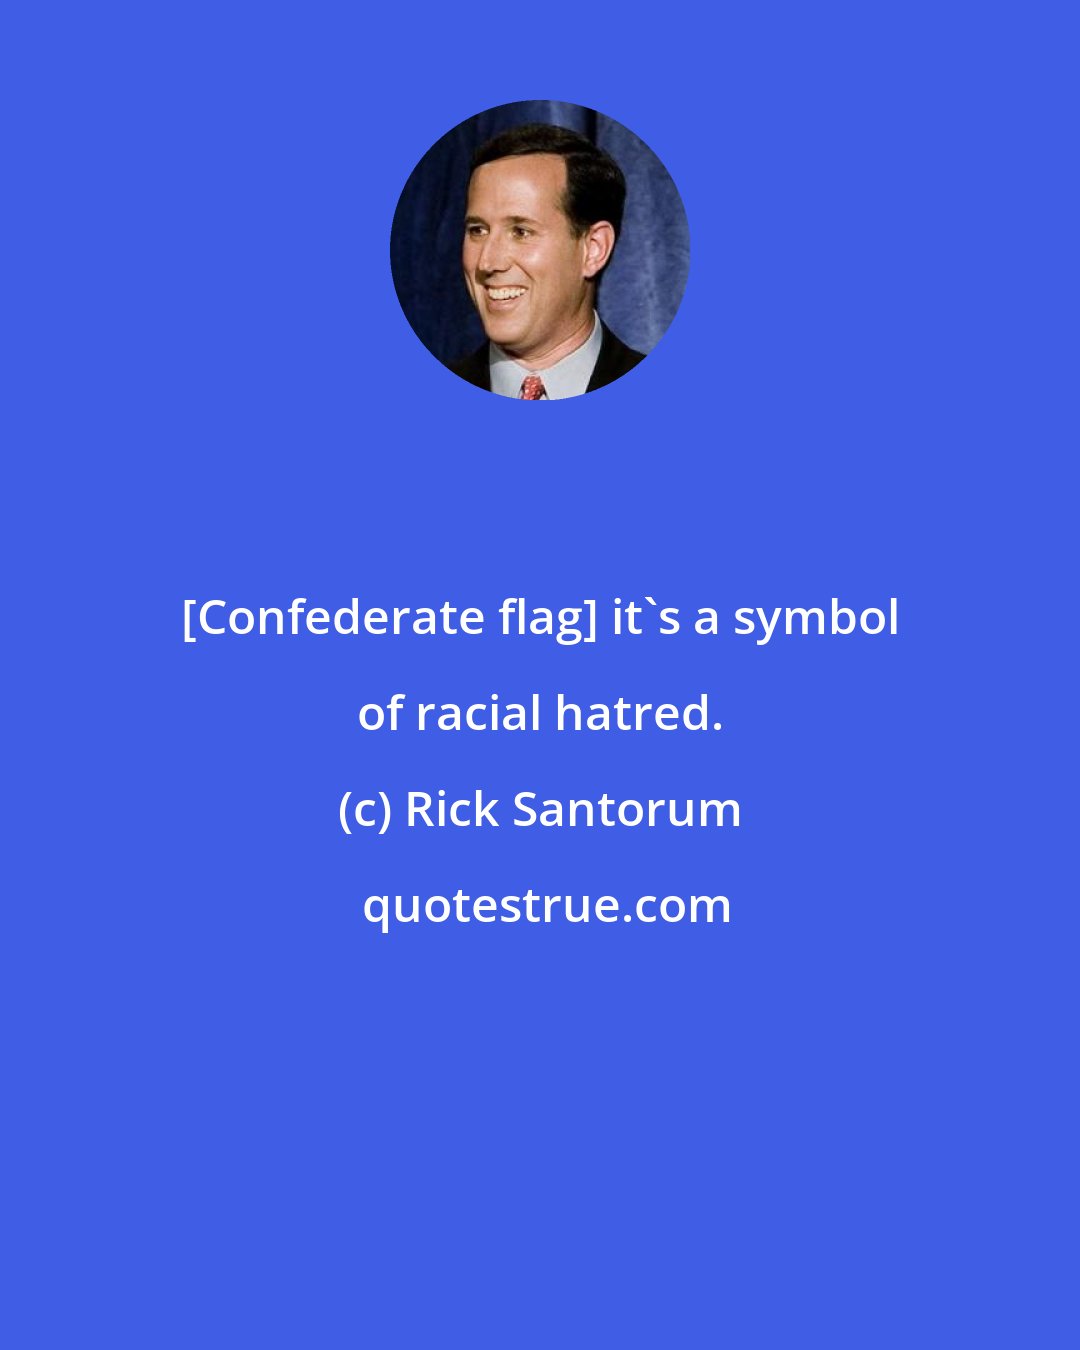 Rick Santorum: [Confederate flag] it's a symbol of racial hatred.